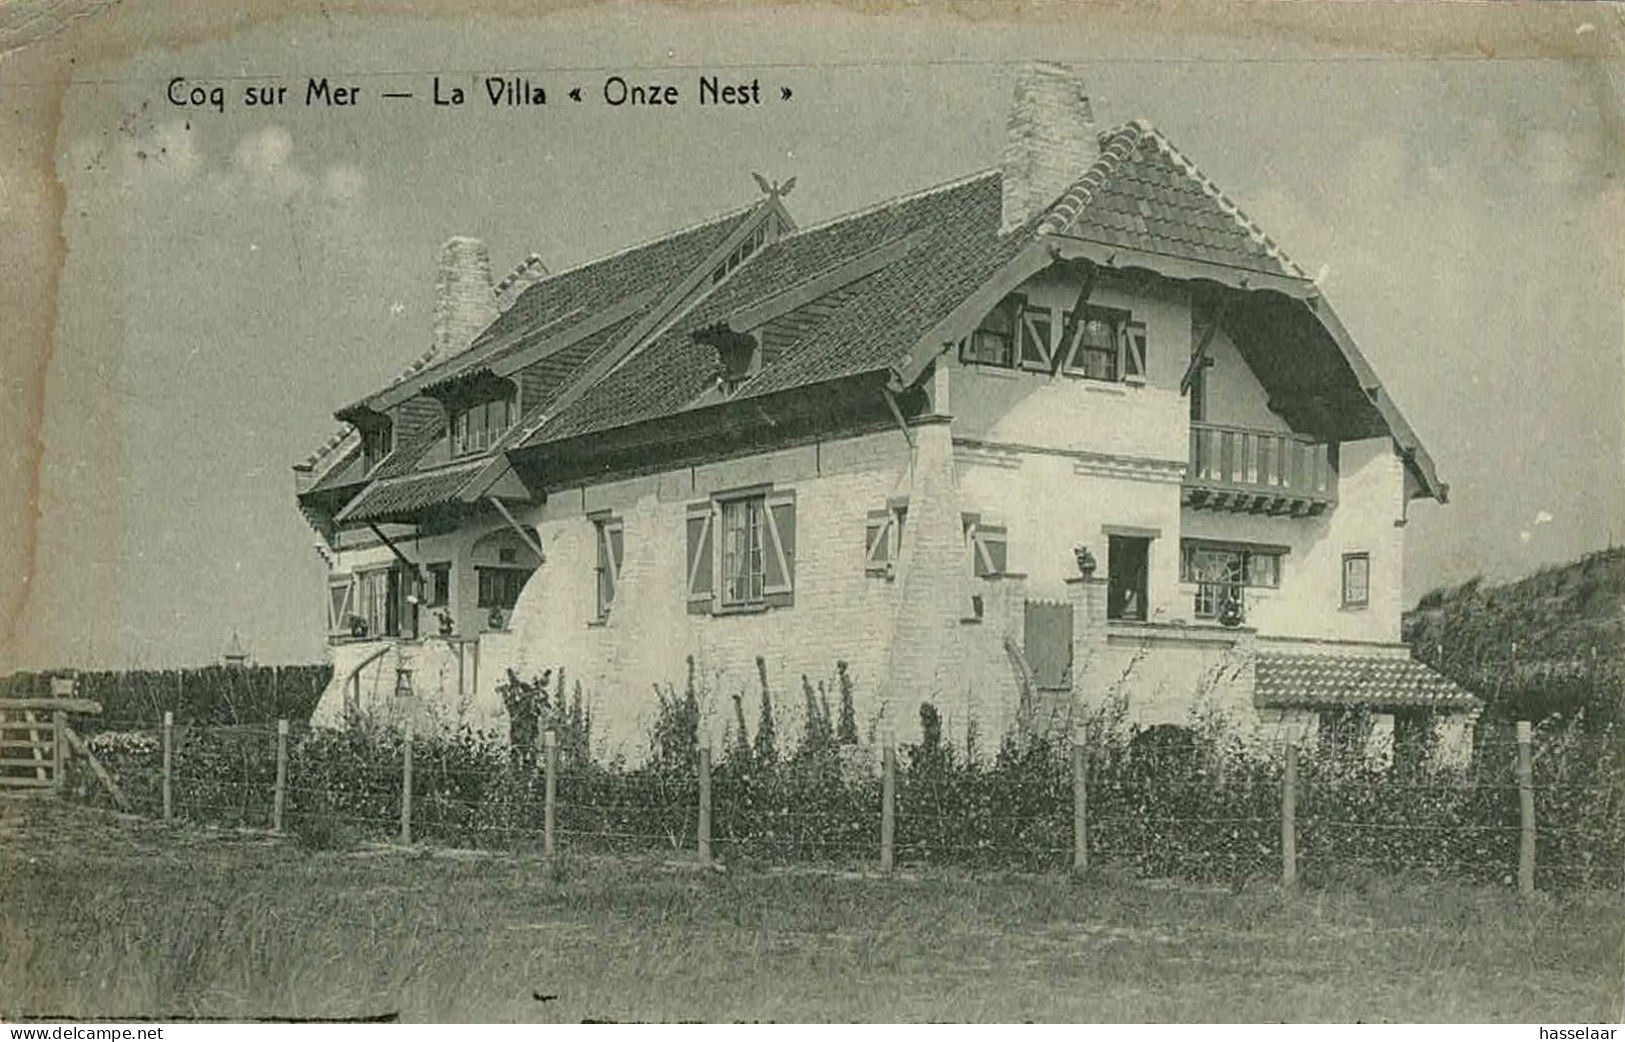 Coq-sur-Mer - La Villa Onze Nest - 1922 - De Haan